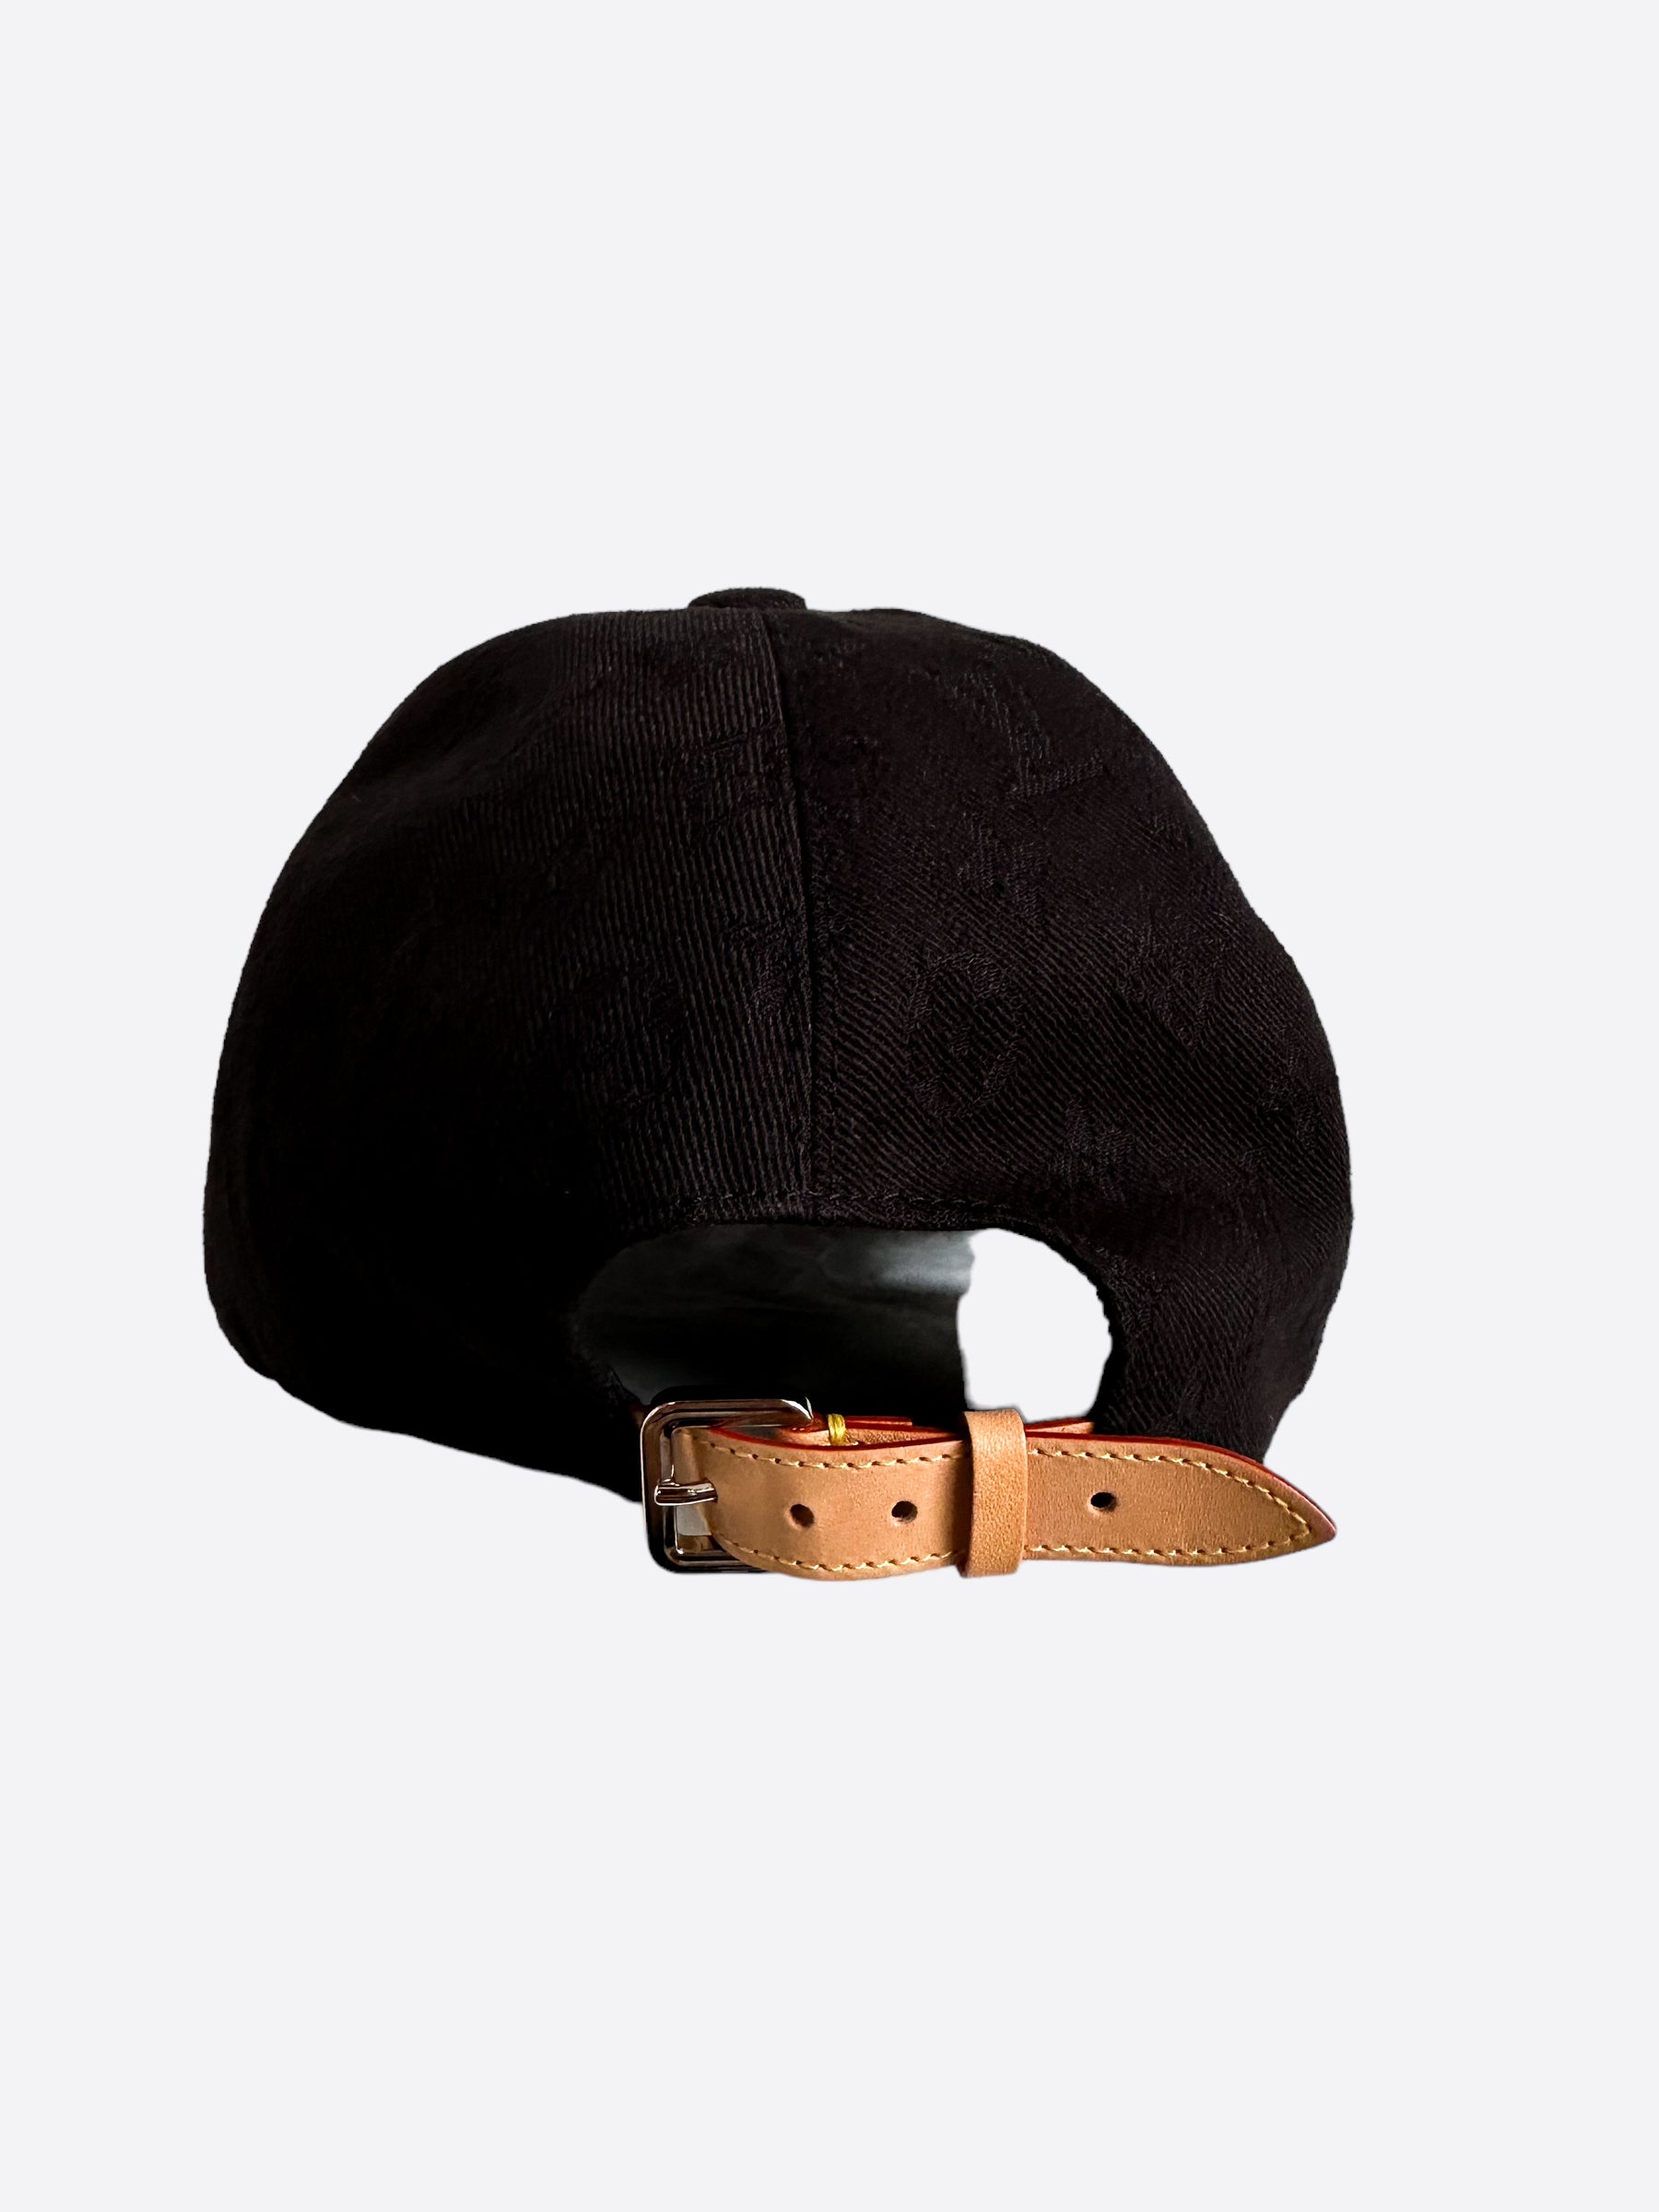 Louis Vuitton Monogram Essential Leather Strapback Cap Black